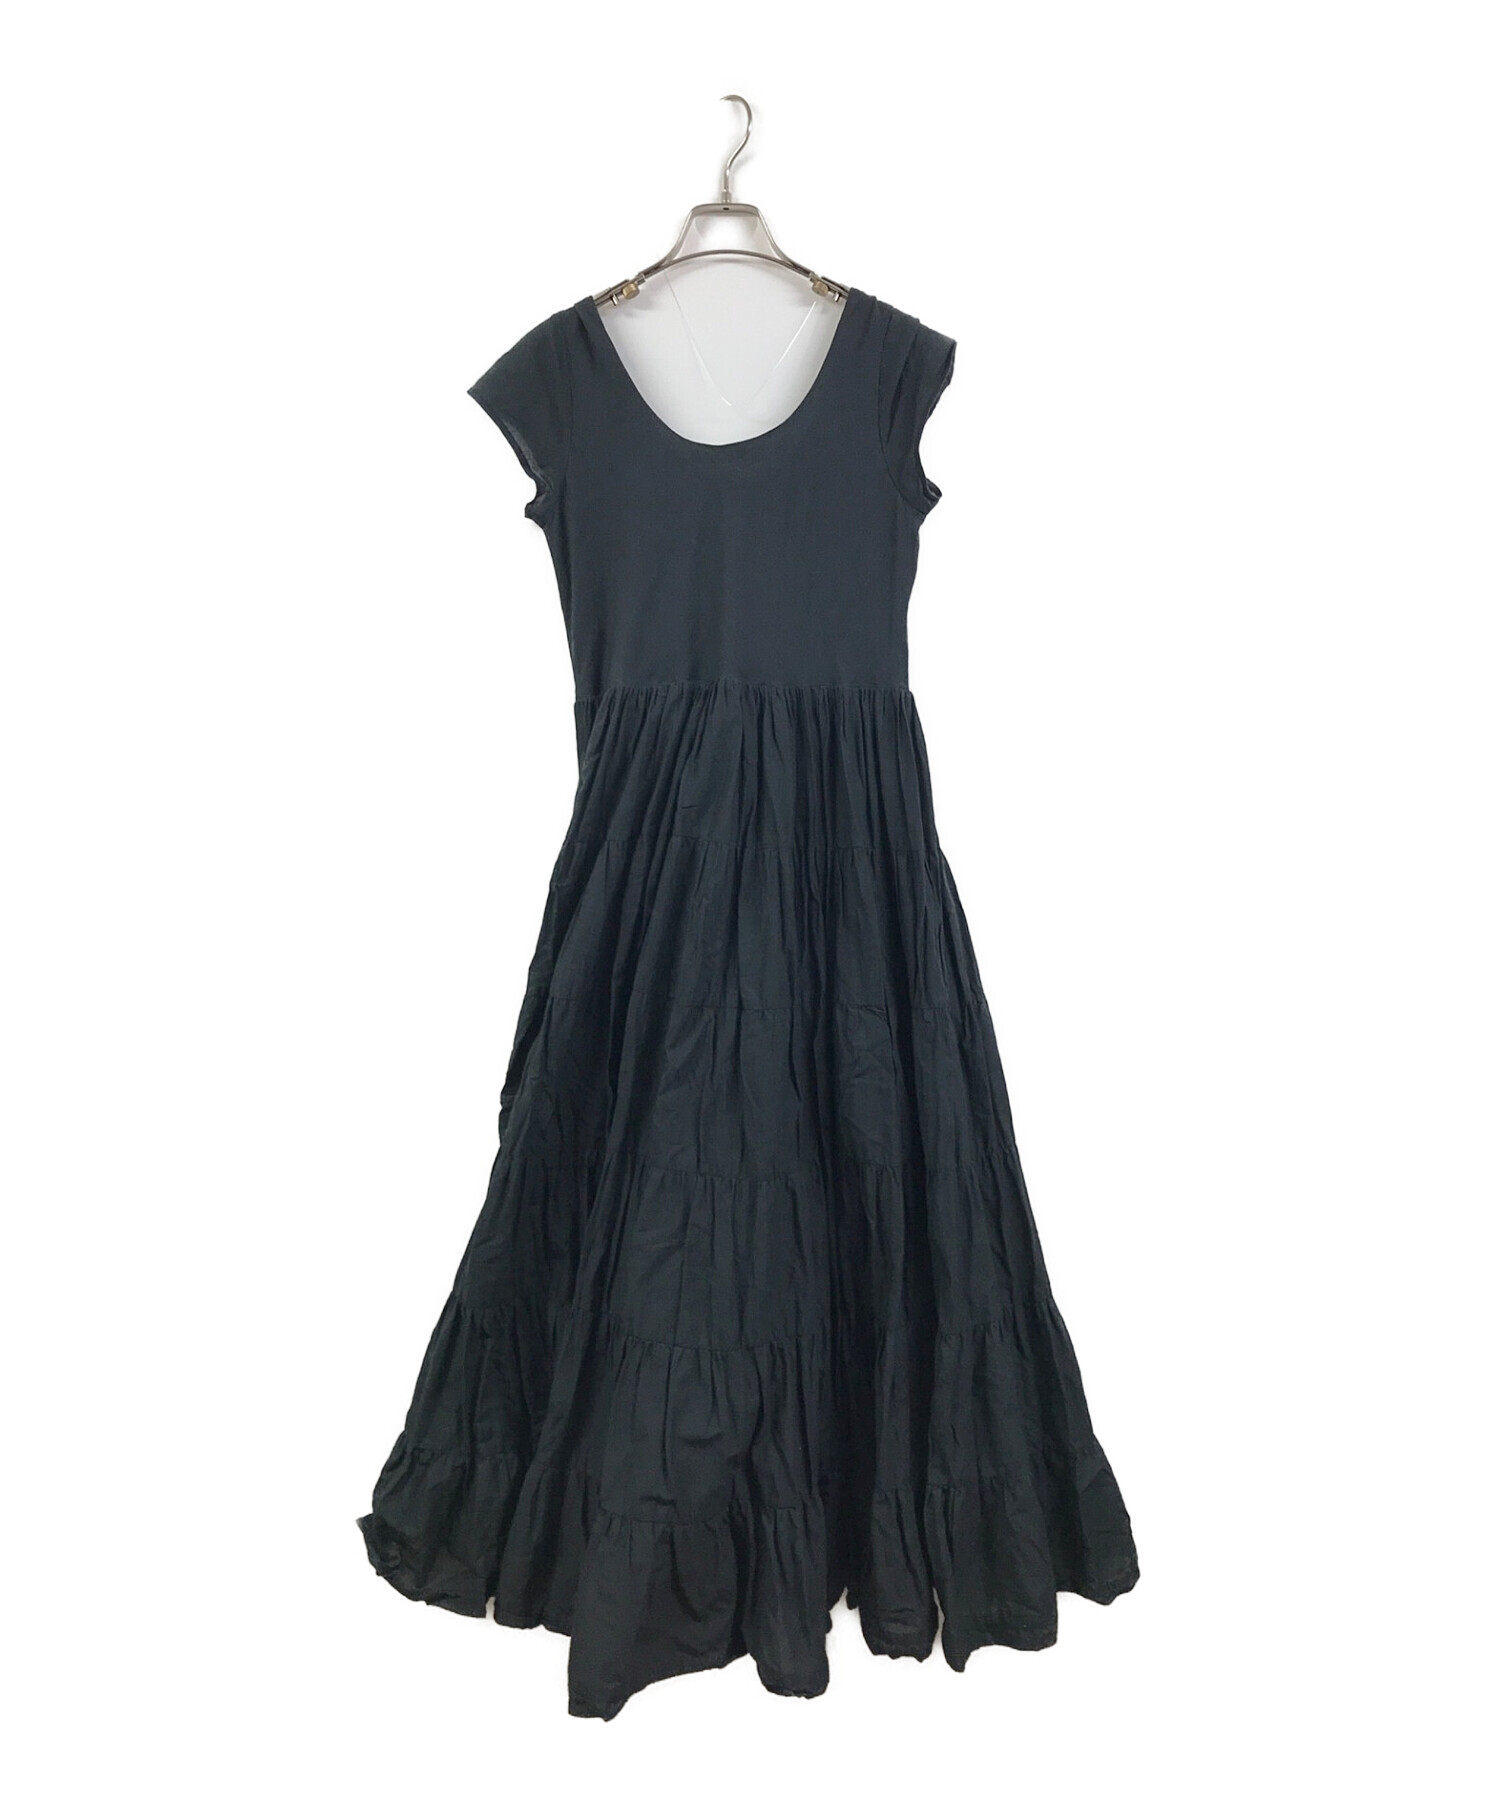 MARIHA (マリハ) 草原の虹のドレス ティアード ノースリーブ ワンピース ブラック サイズ:不明